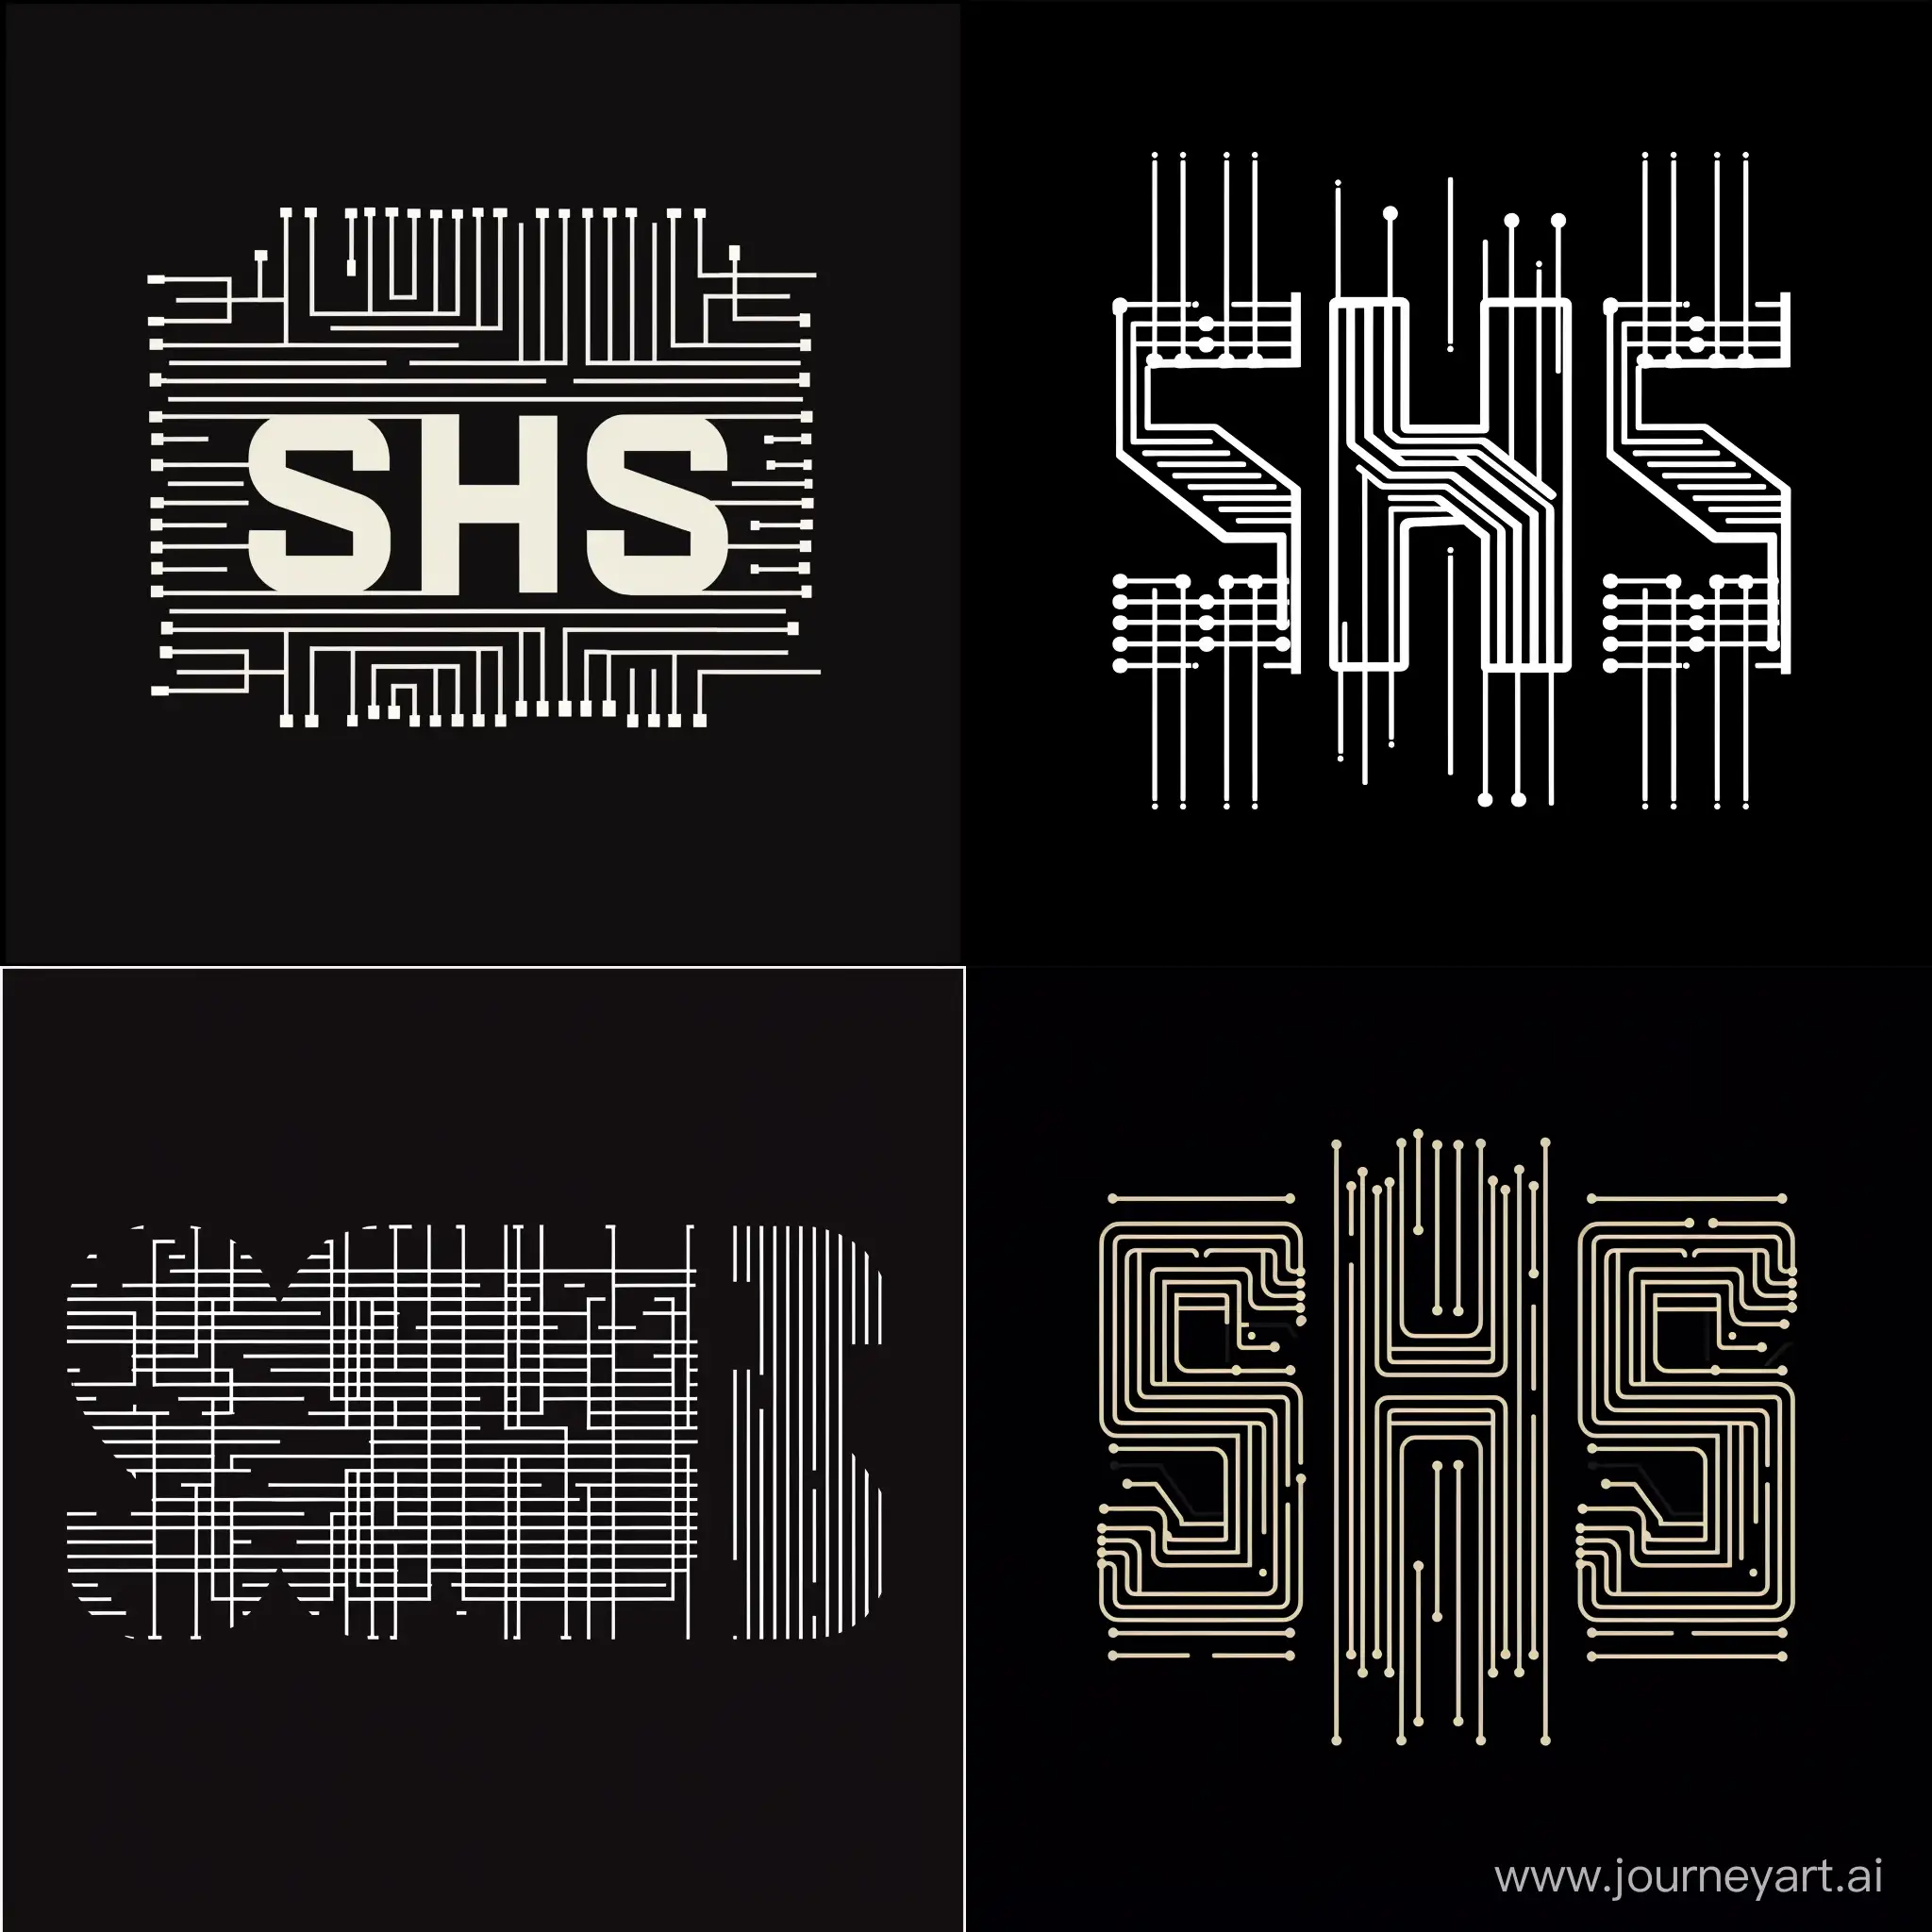 Нарисуй логотип. Логотип состоит из трех букв: SHS. Буквы должны быть в виде дорожек, как на печатной плате.